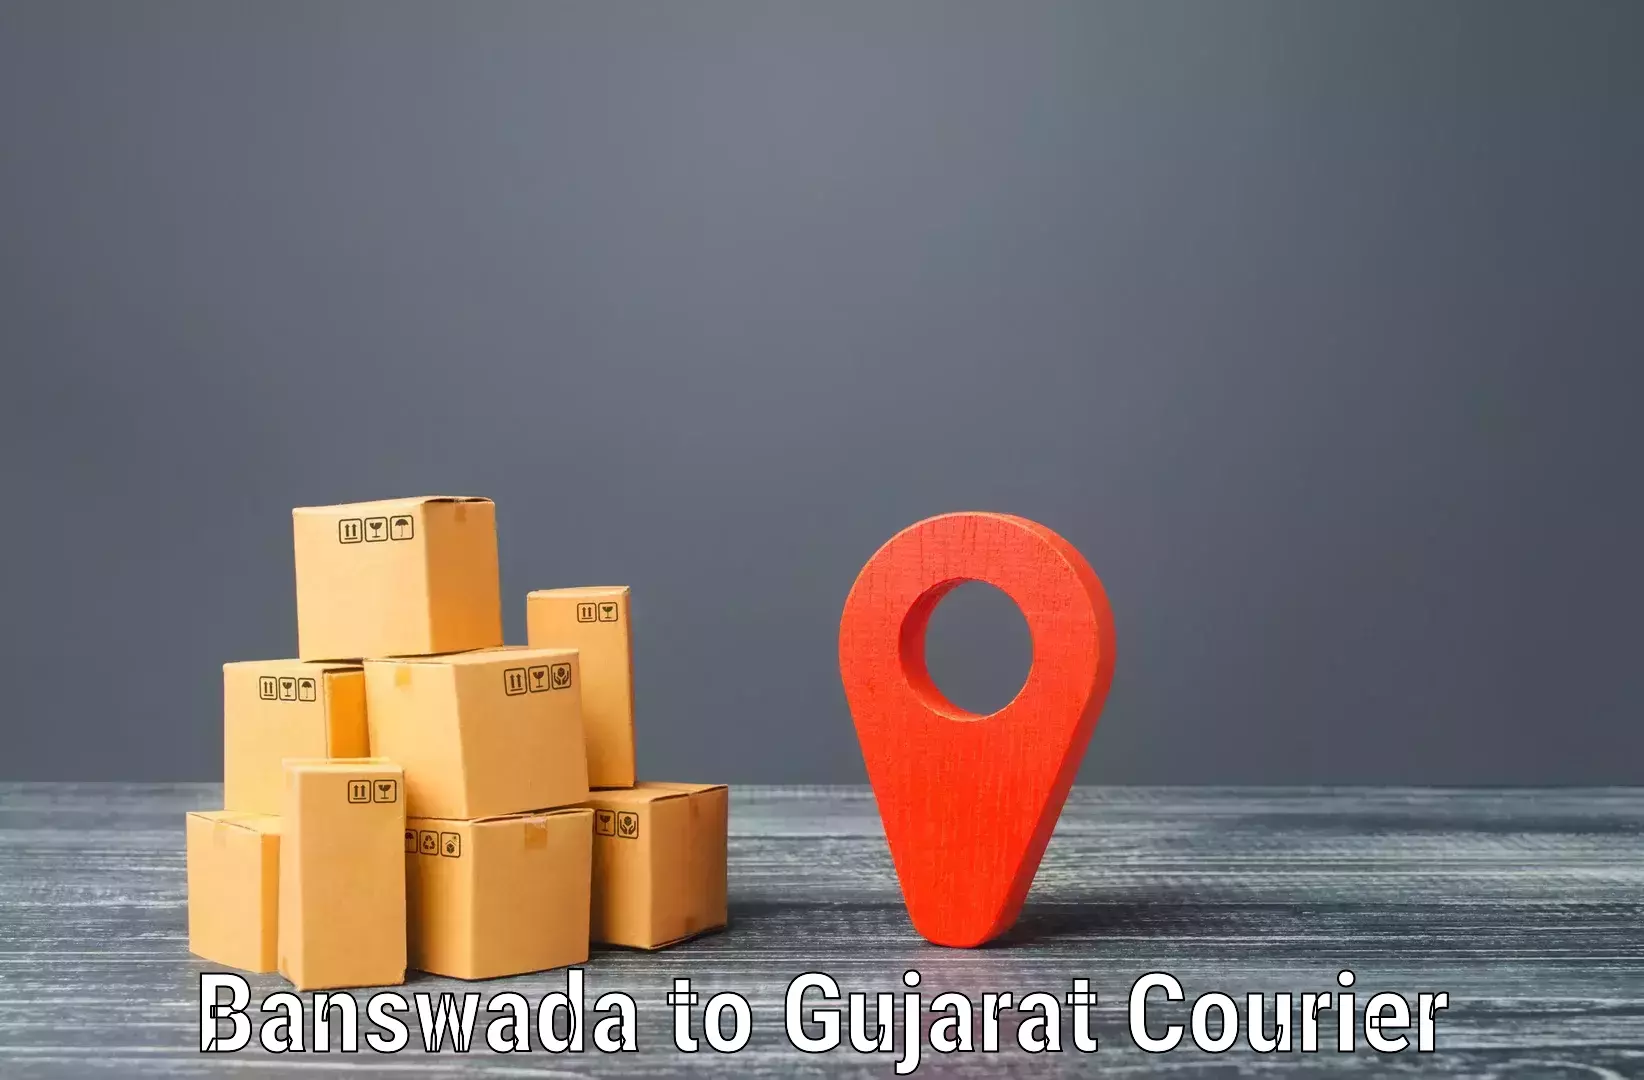 Local courier options Banswada to Navrangpura